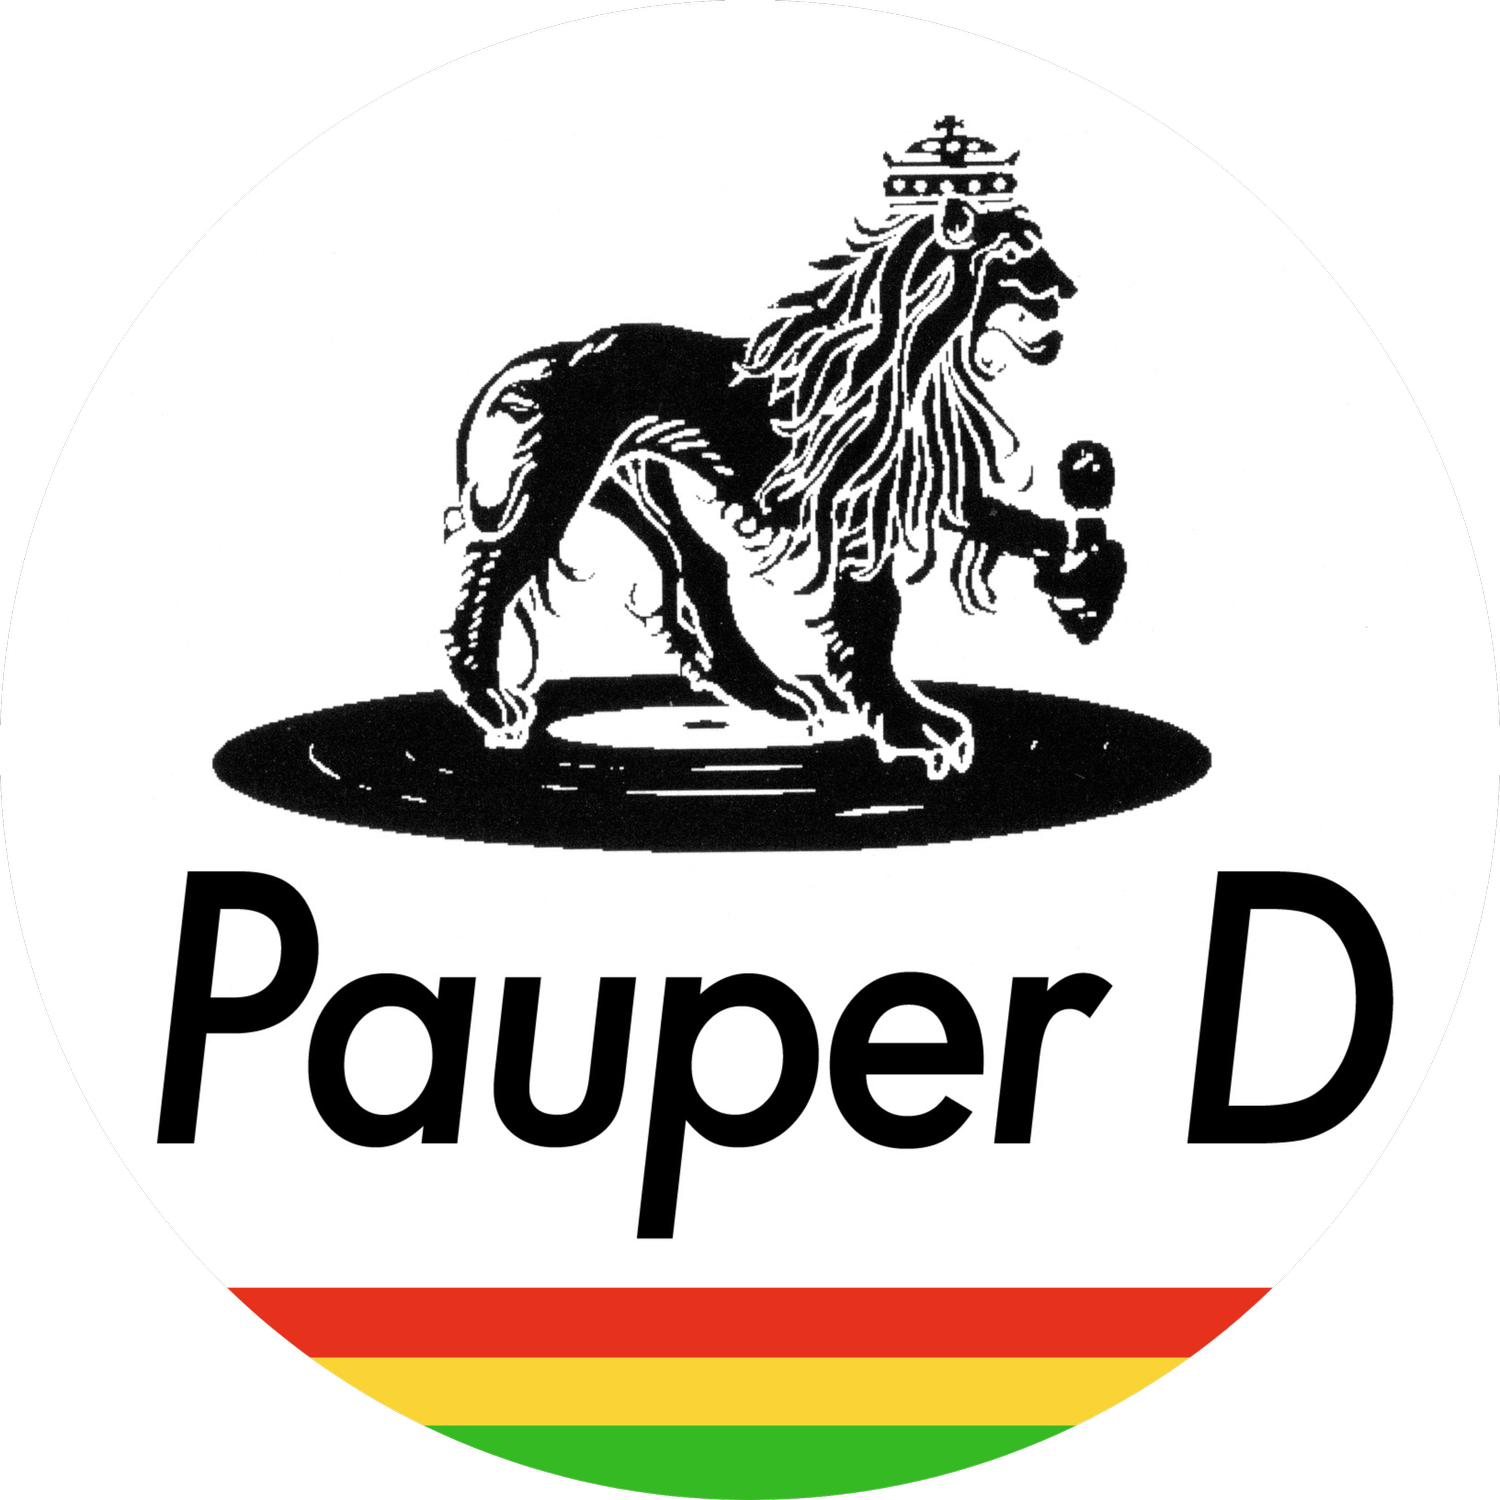 Pauper D